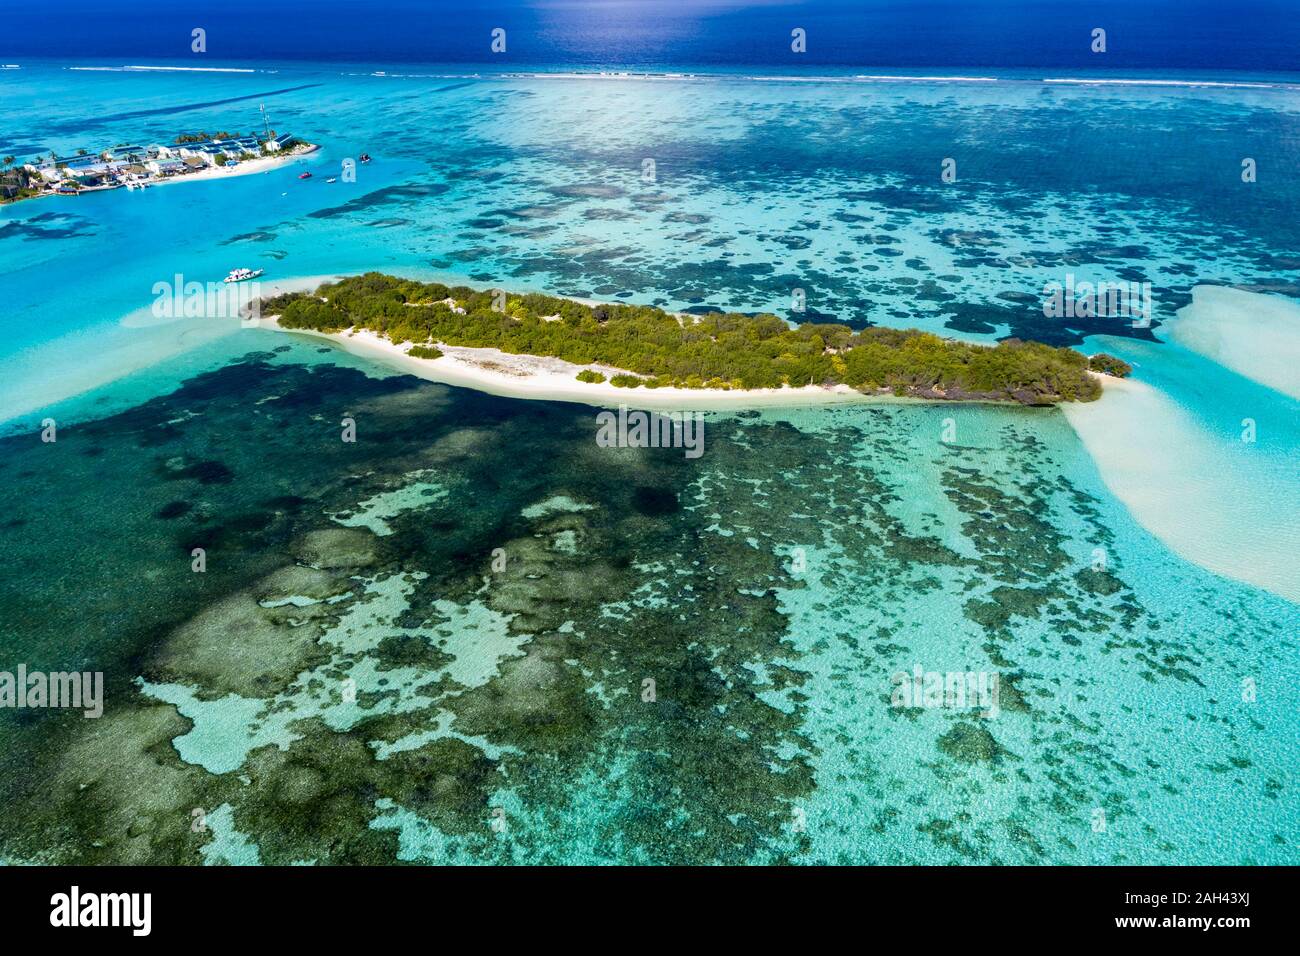 Maldives, South Male Atoll, Atolón Kaafu, vista aérea de los pequeños estados insulares y el arrecife Foto de stock